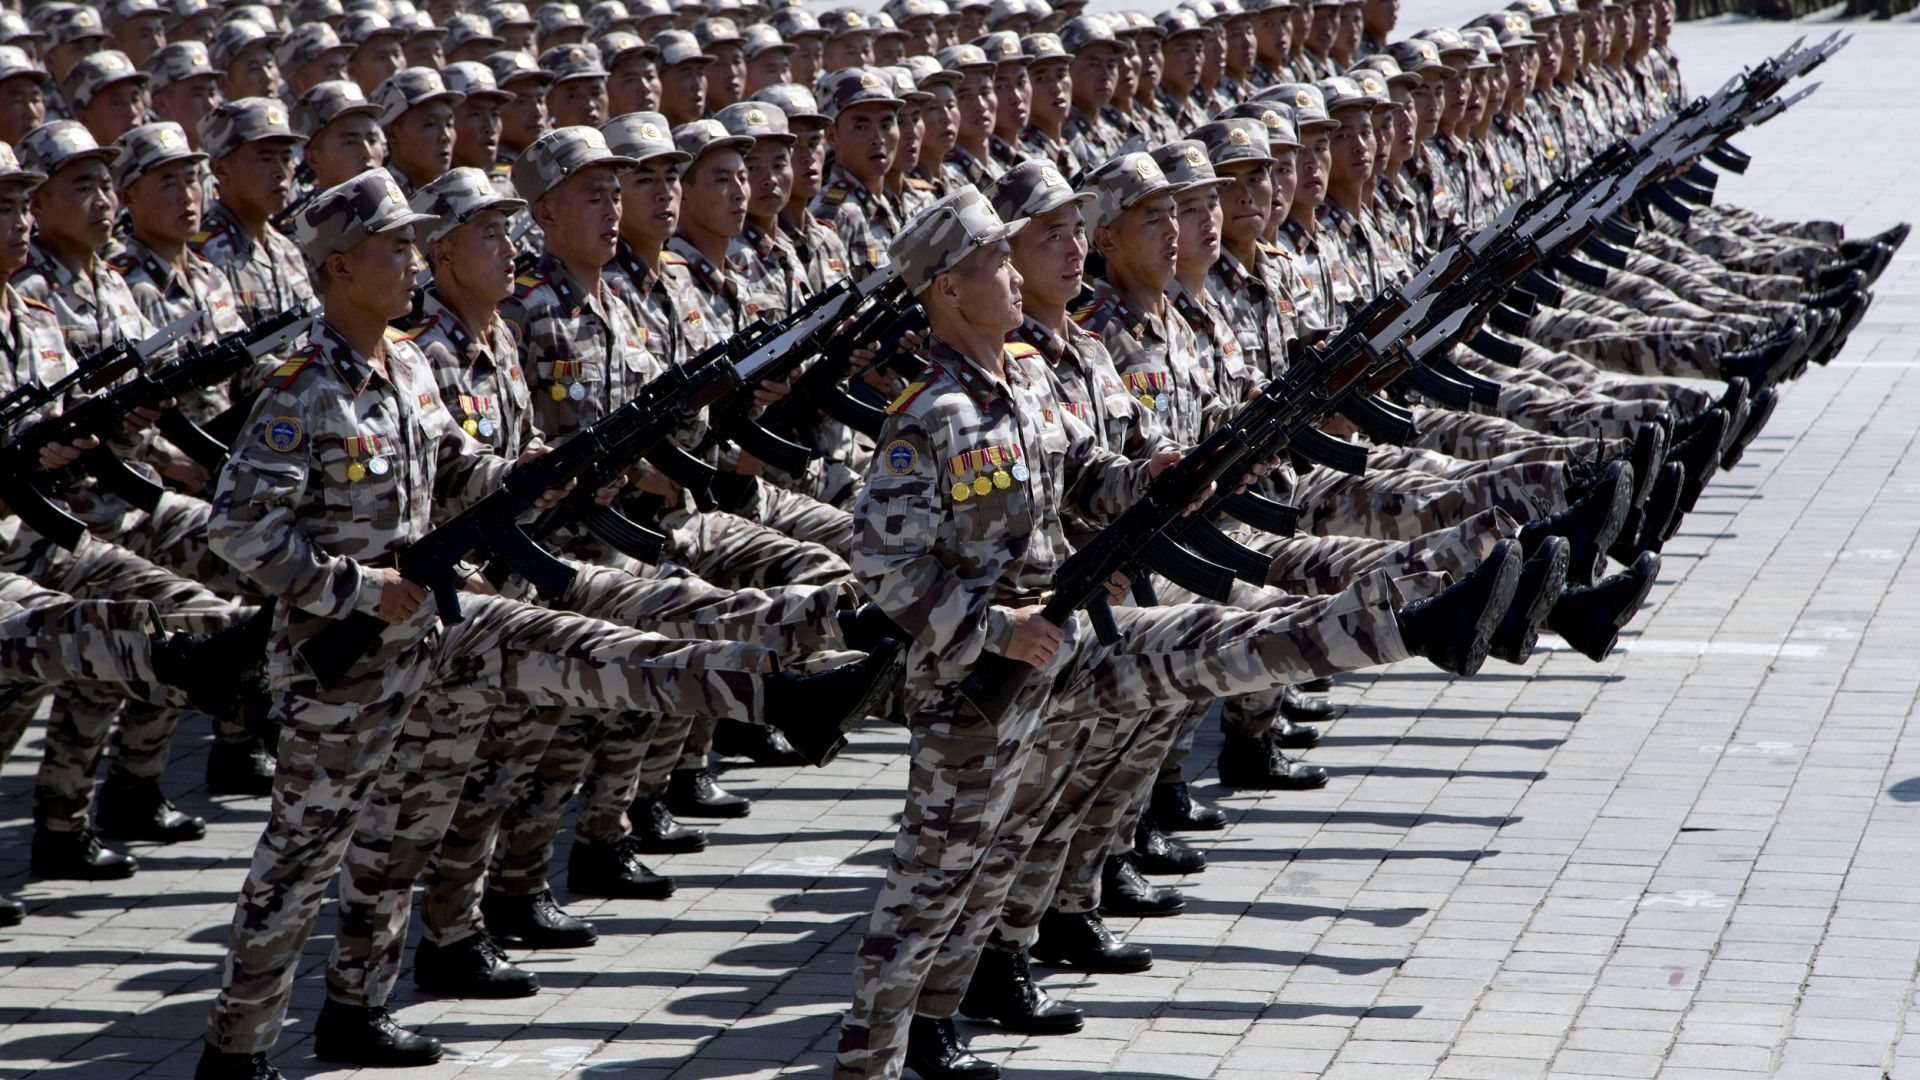 Северна Корея отделя 25% от своя бюджет за армията си